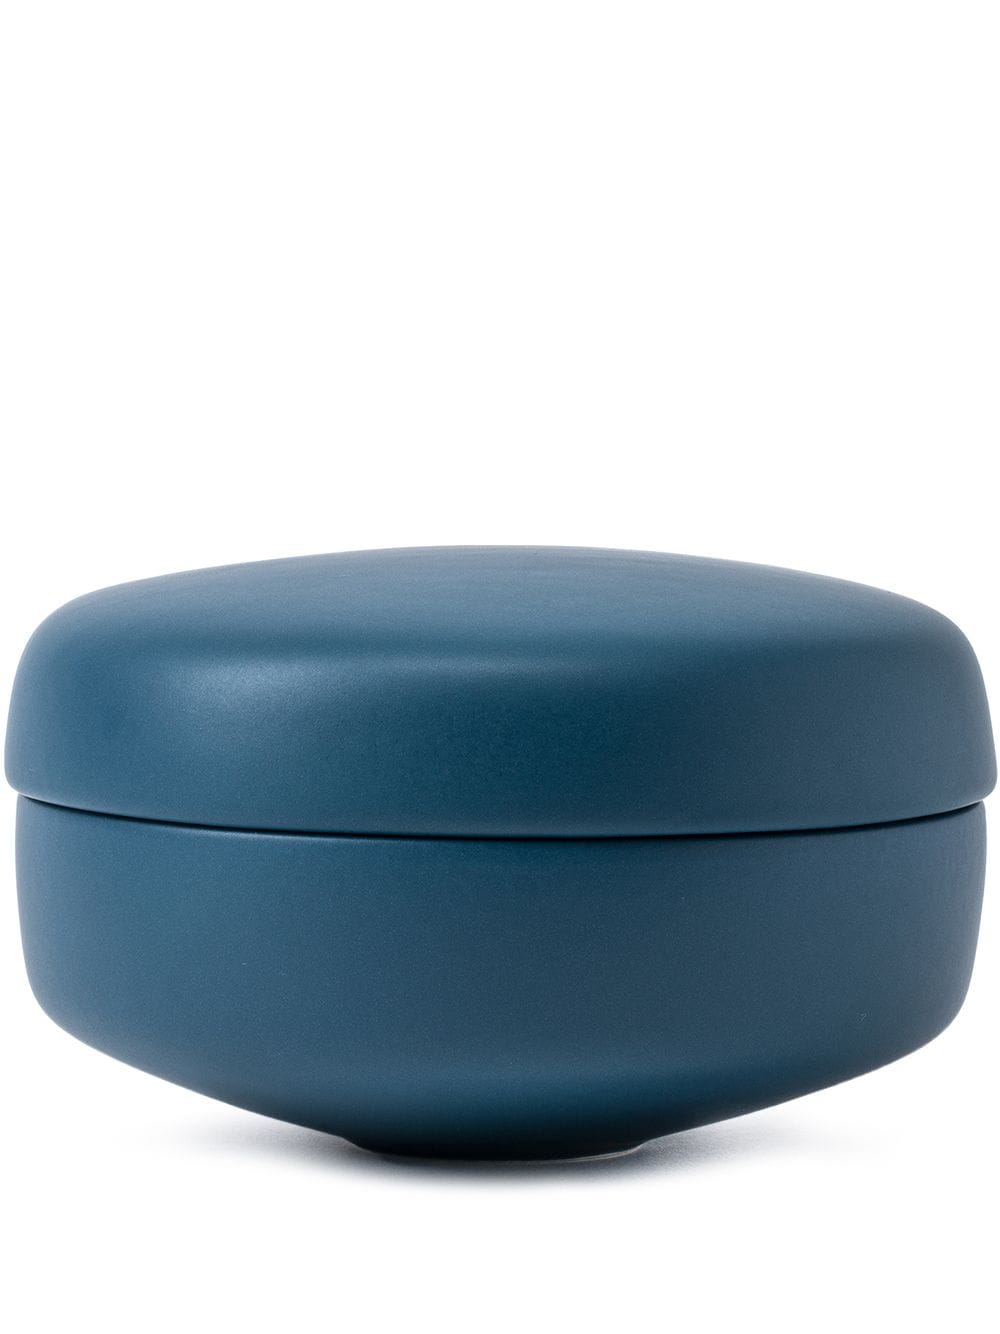 raawii Alev Bon trinket box (13.5cm) - Blue